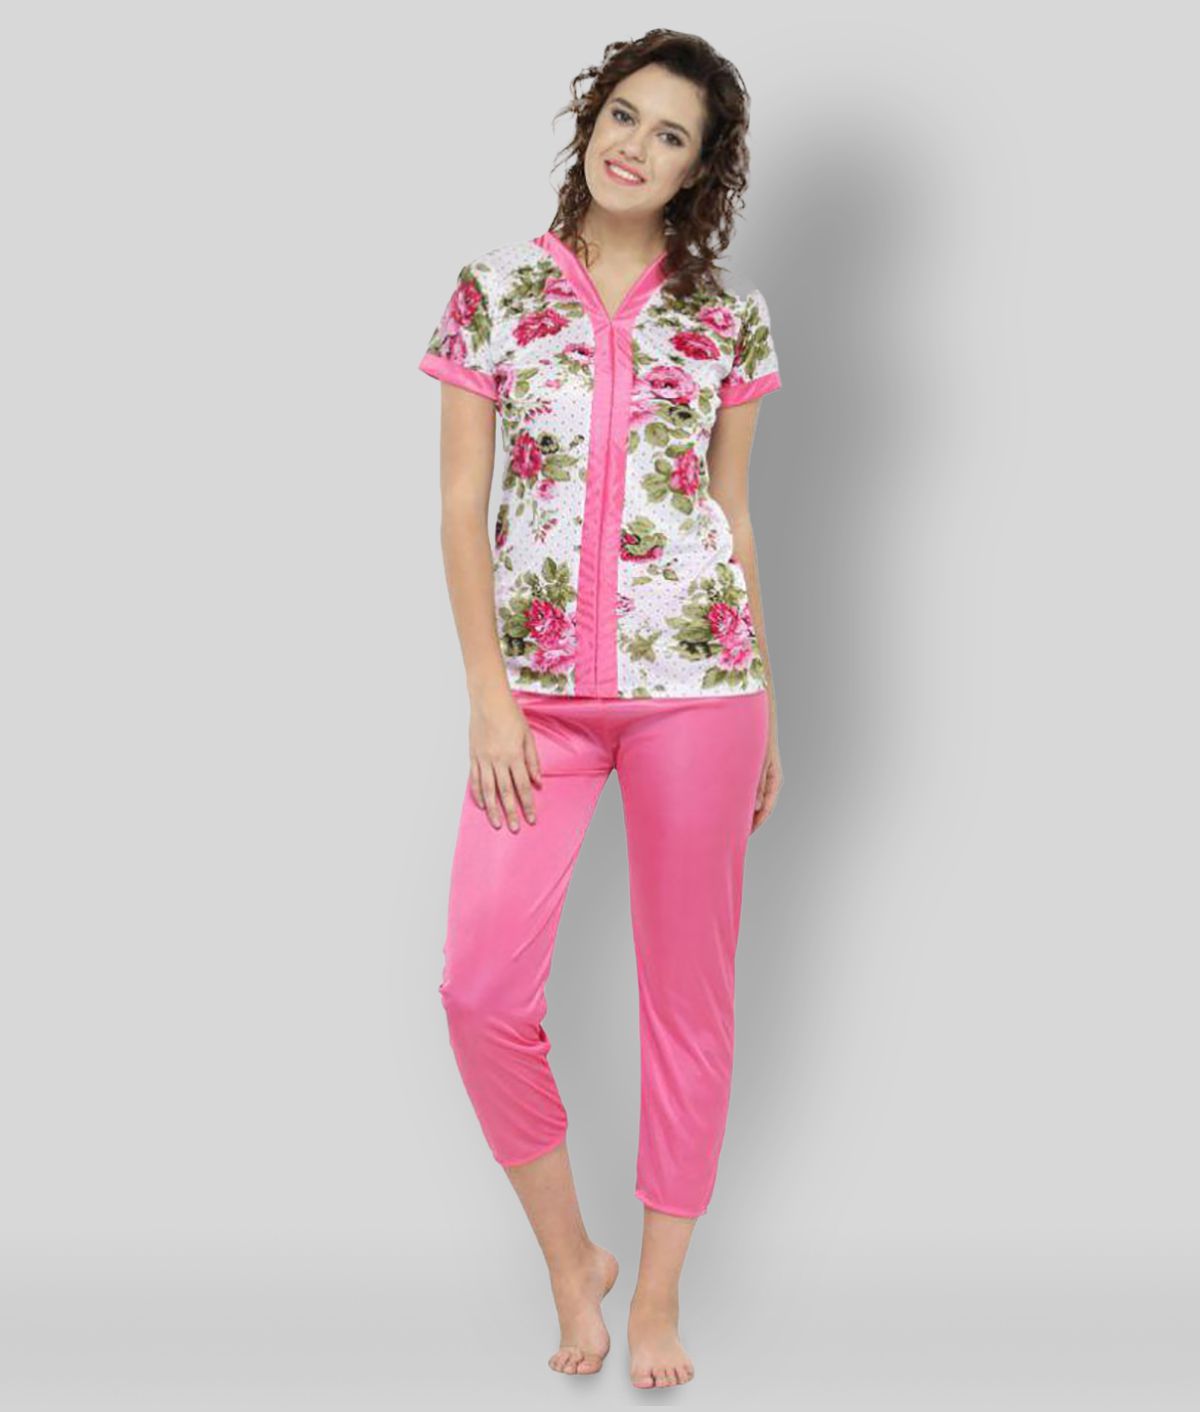     			N-Gal - Pink Satin Women's Nightwear Nightsuit Sets